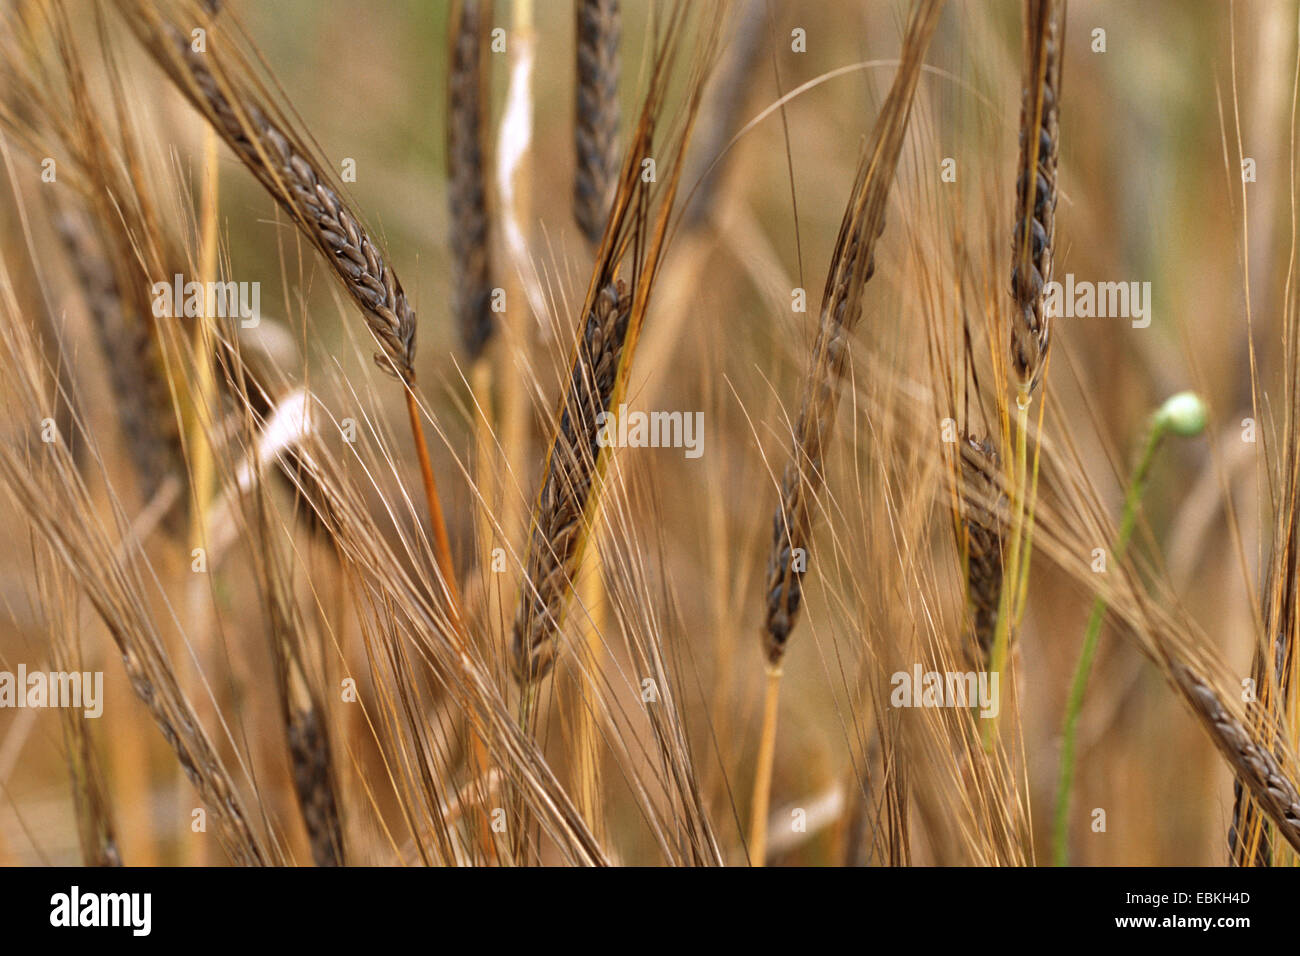 barley (Hordeum distichon var. persicum, Hordeum vulgare ssp. distichon var. persicum), spikes Stock Photo